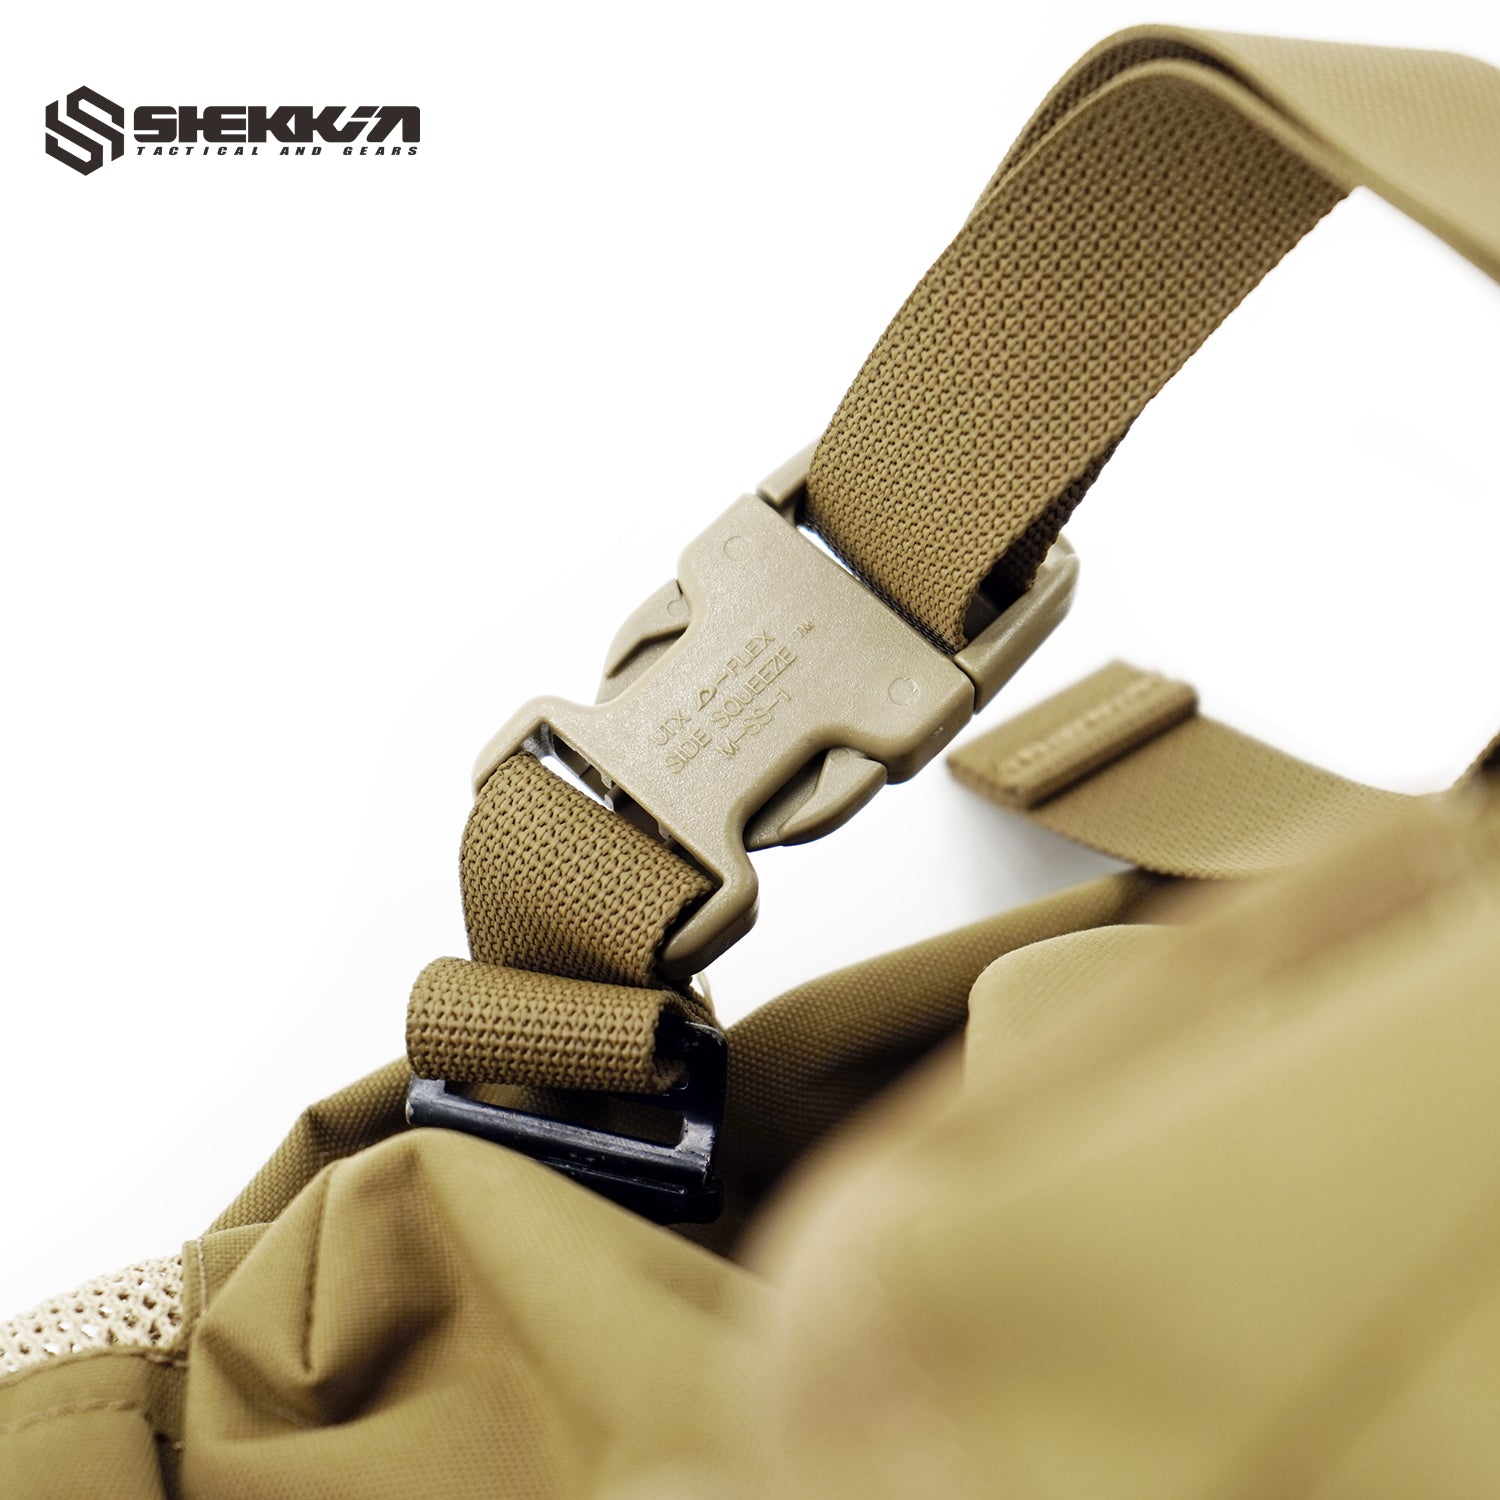 Replica CSAR Medical Ruck - Shekkin Gears